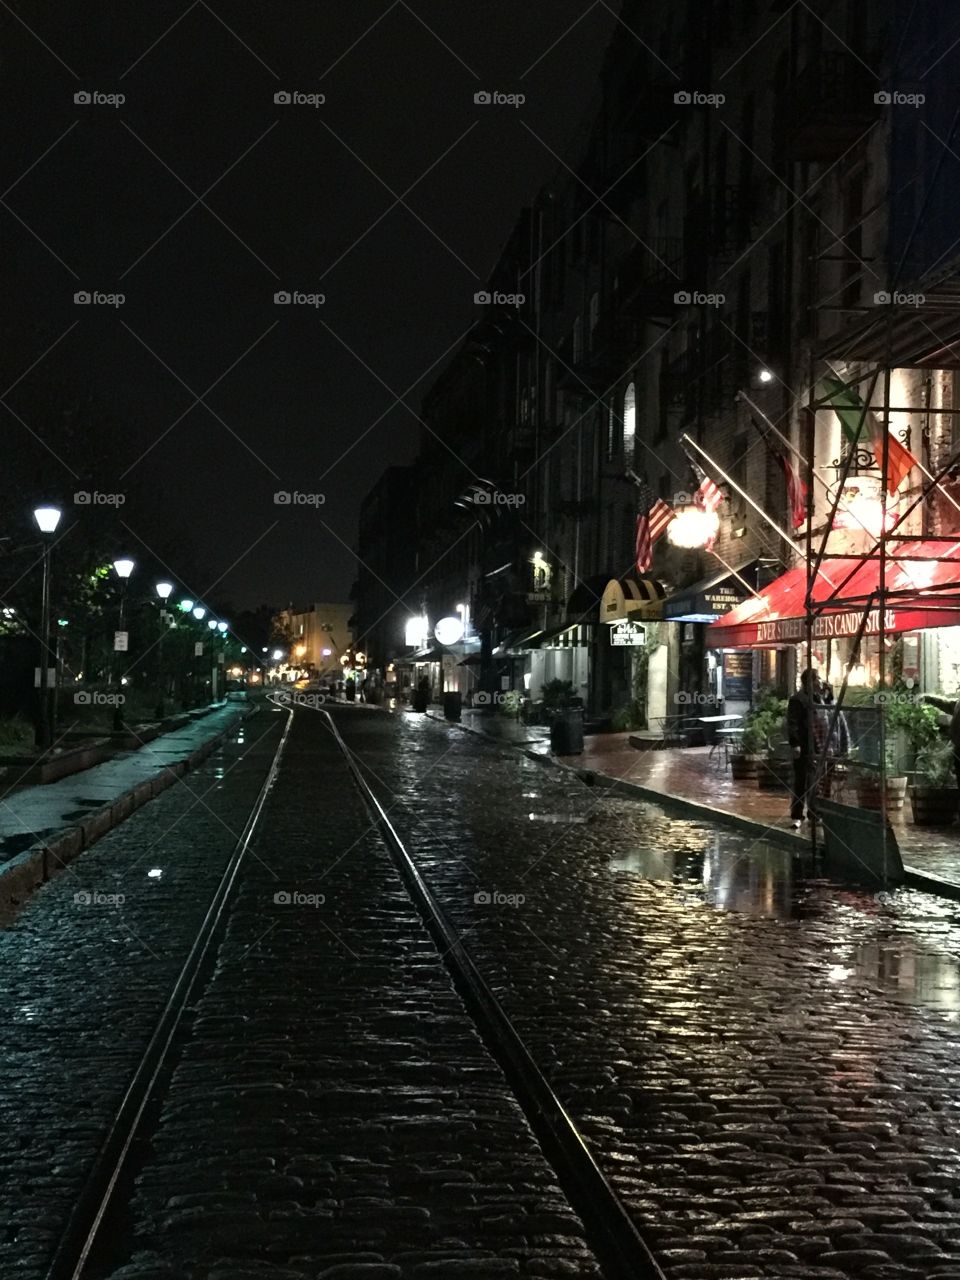 Streets of downtown Savannah Ga at night 